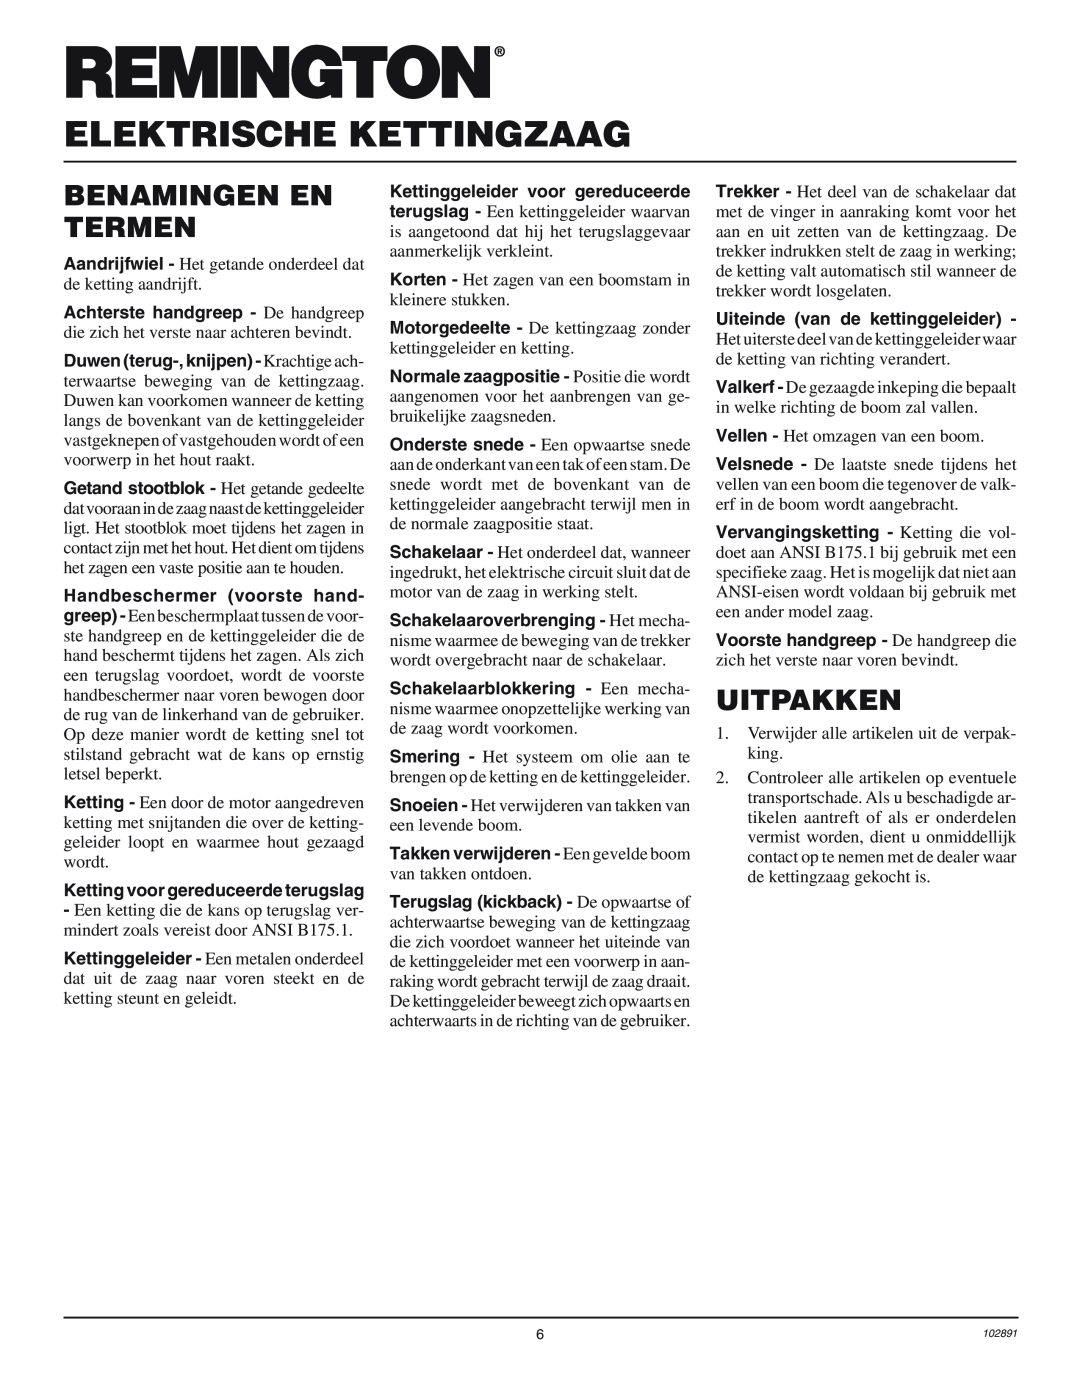 Desa 100271-01 owner manual Benamingen En Termen, Uitpakken, Elektrische Kettingzaag 